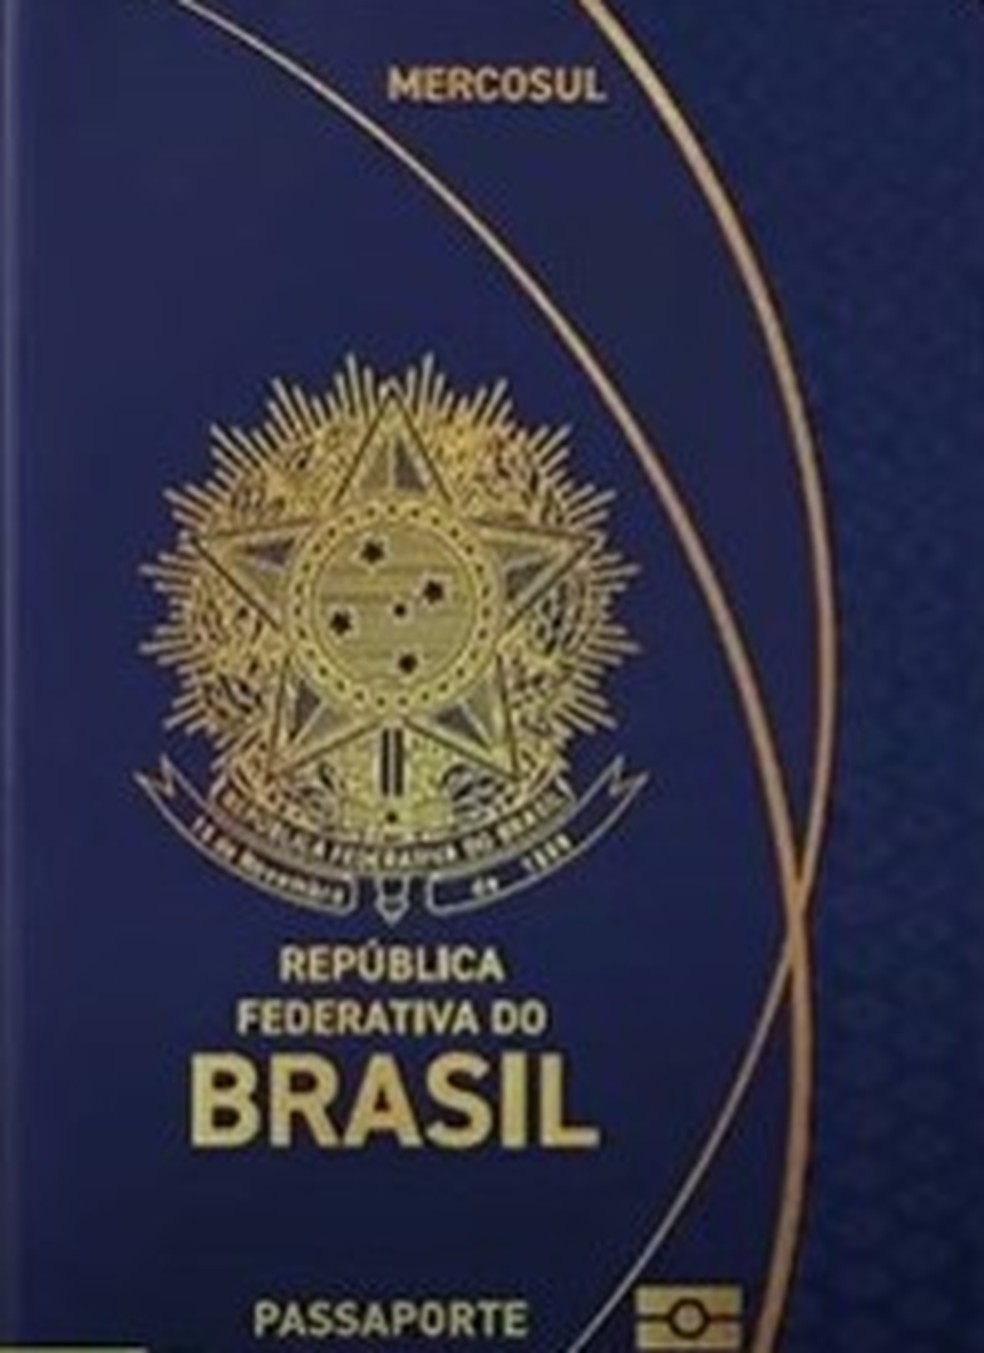 Imagem da capa do novo passaporte — Foto: Reprodução